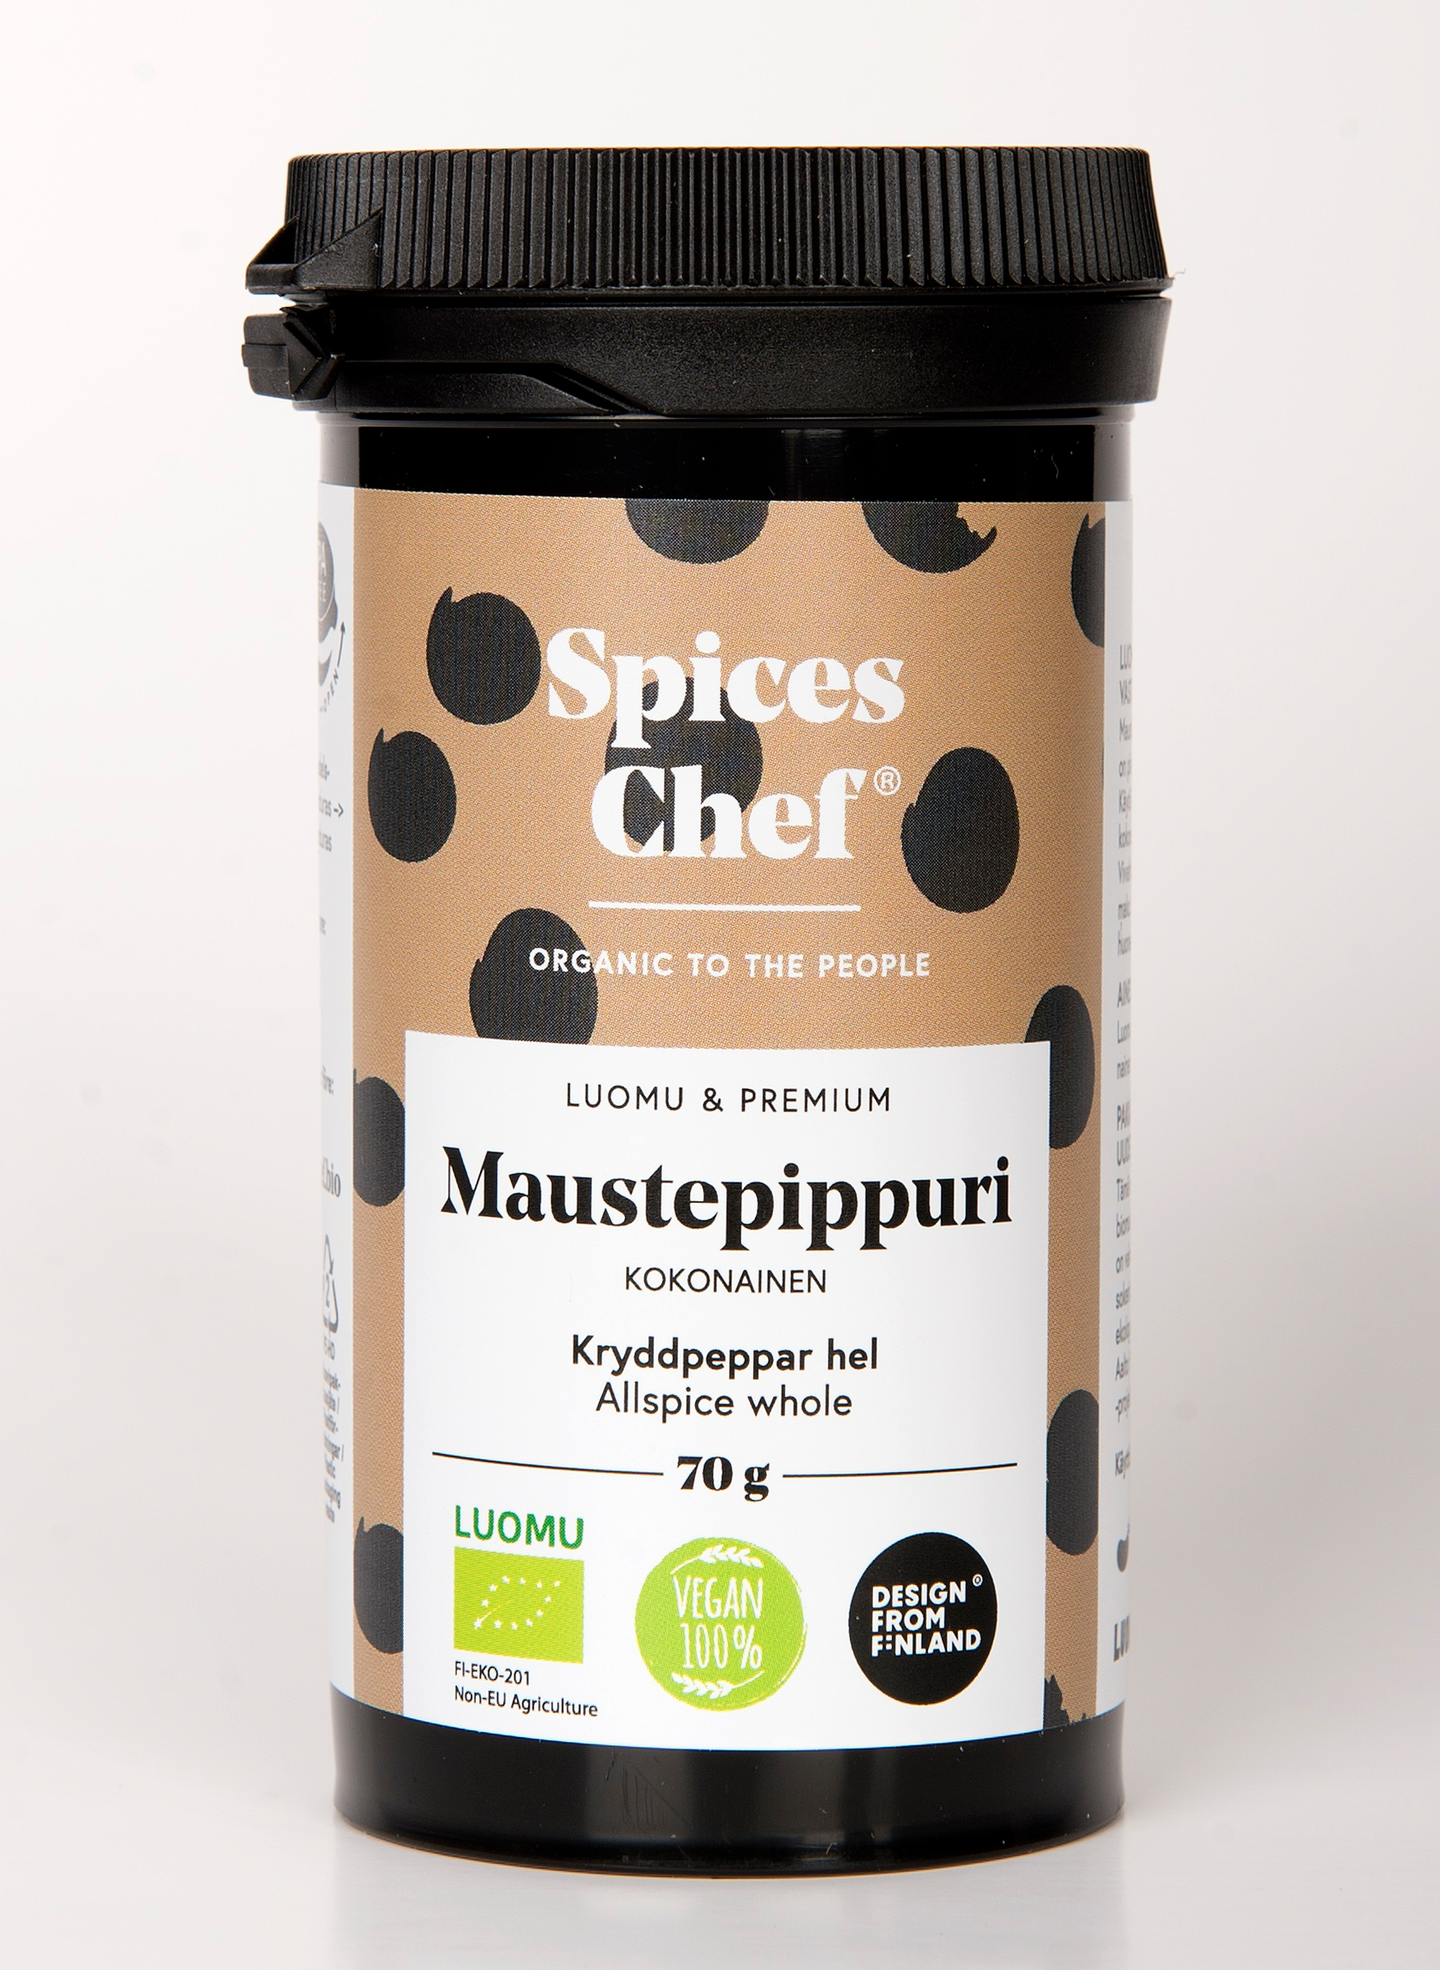 Spices Chef luomu maustepippuri kokonainen 70g   BPA-vapaassa biomuovi maustepurkissa.